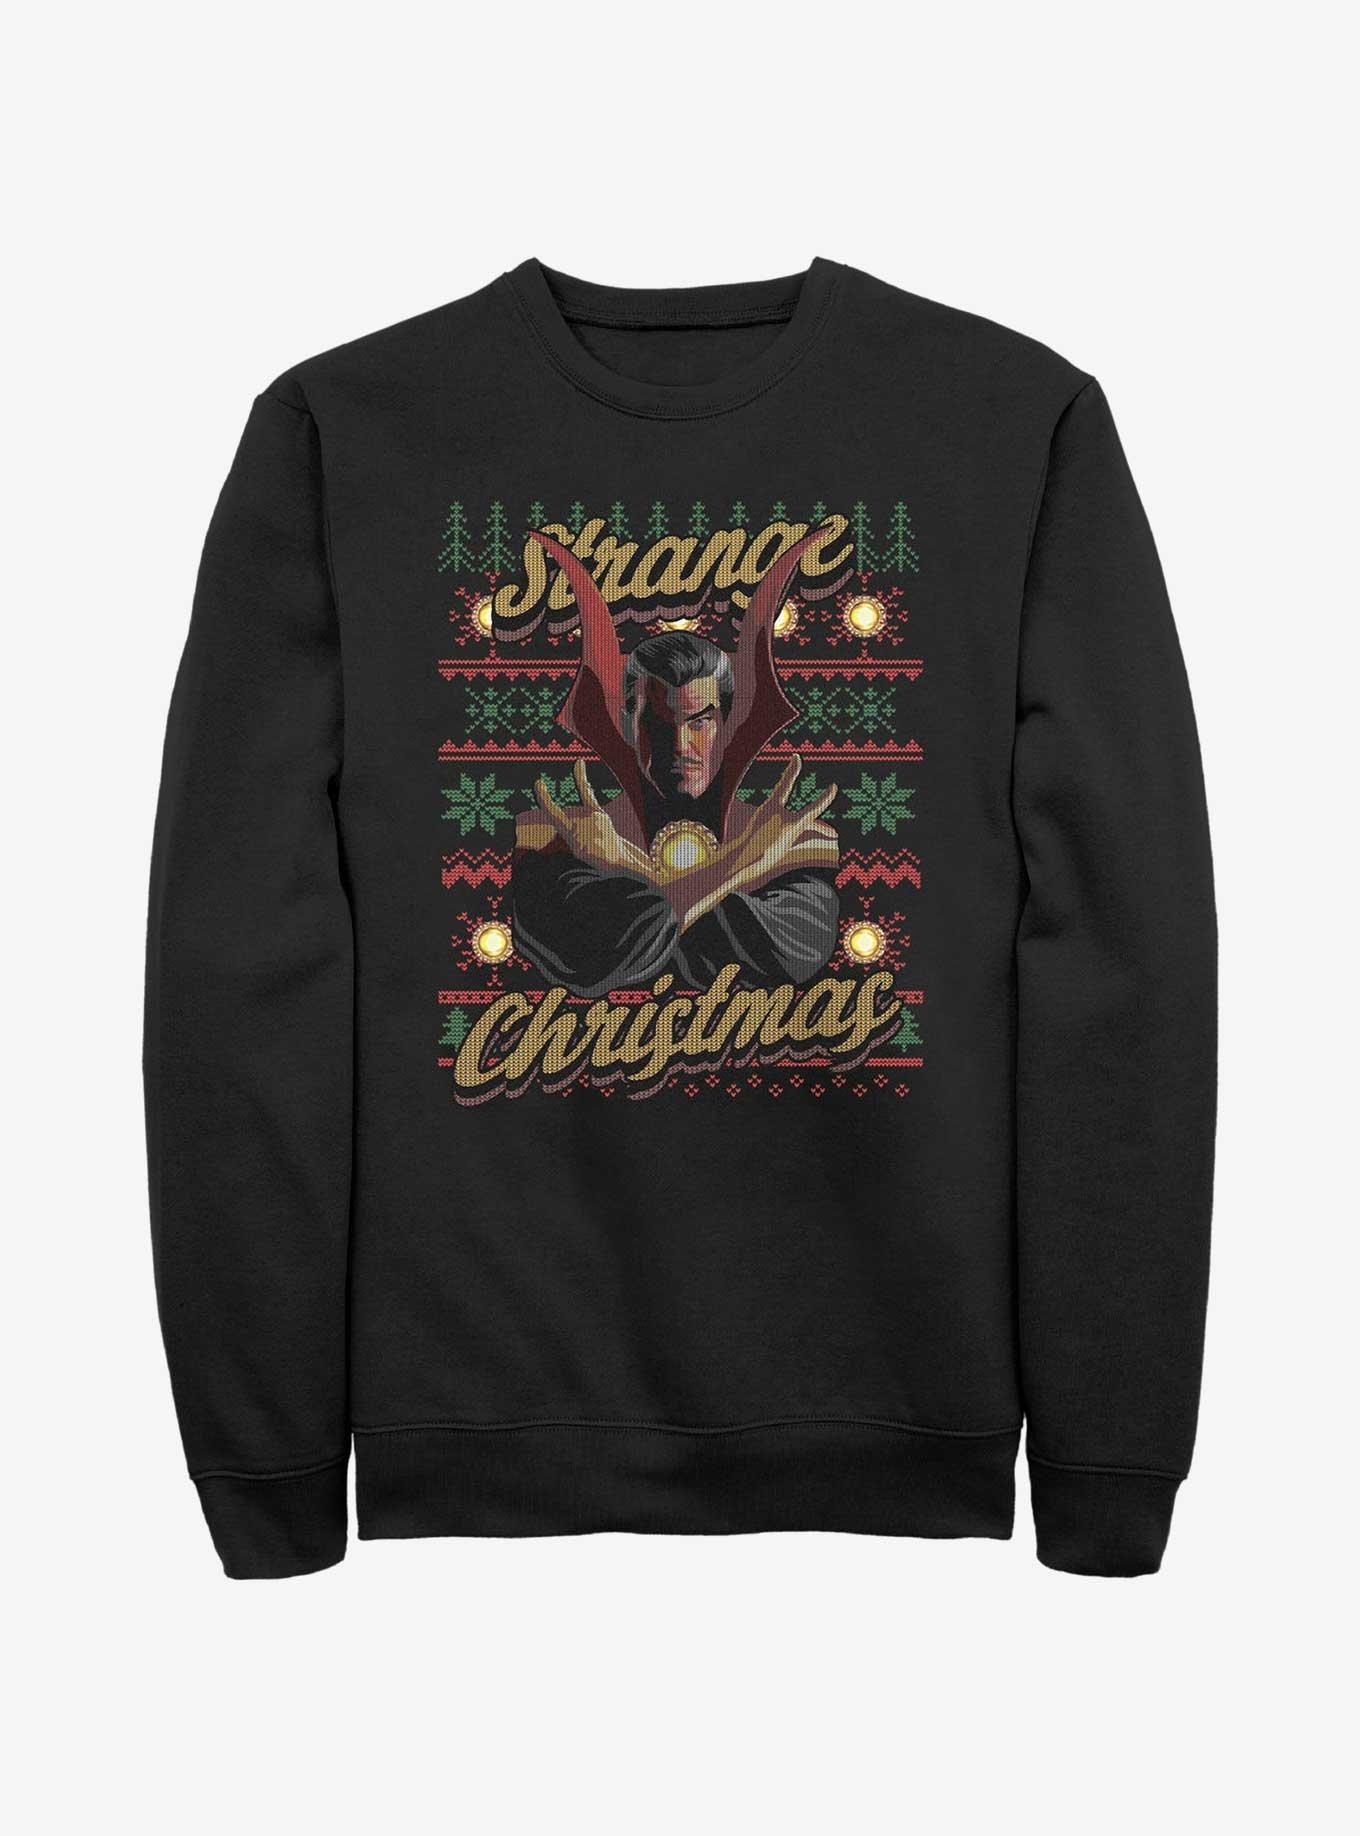 Marvel Doctor Strange Ugly Christmas Sweatshirt, BLACK, hi-res